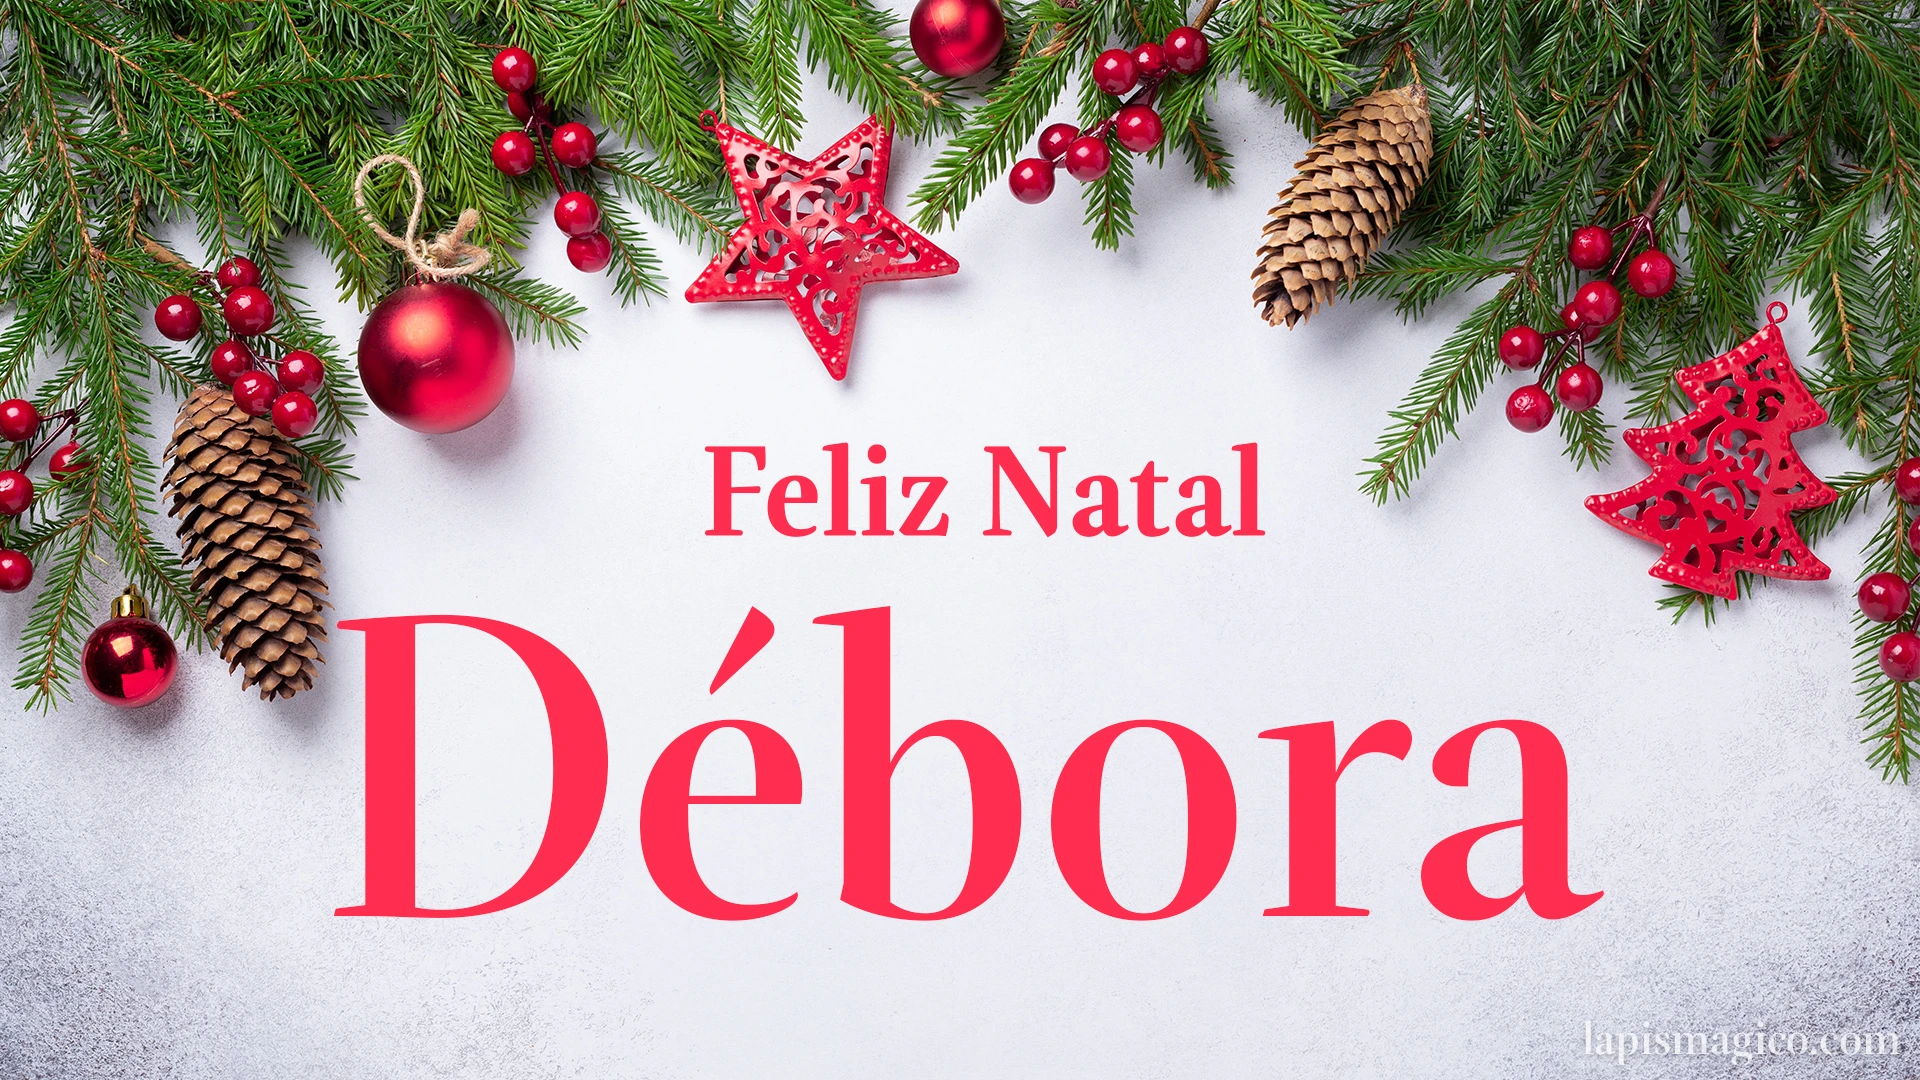 Oh Débora, cinco postais de Feliz Natal Postal com o teu nome